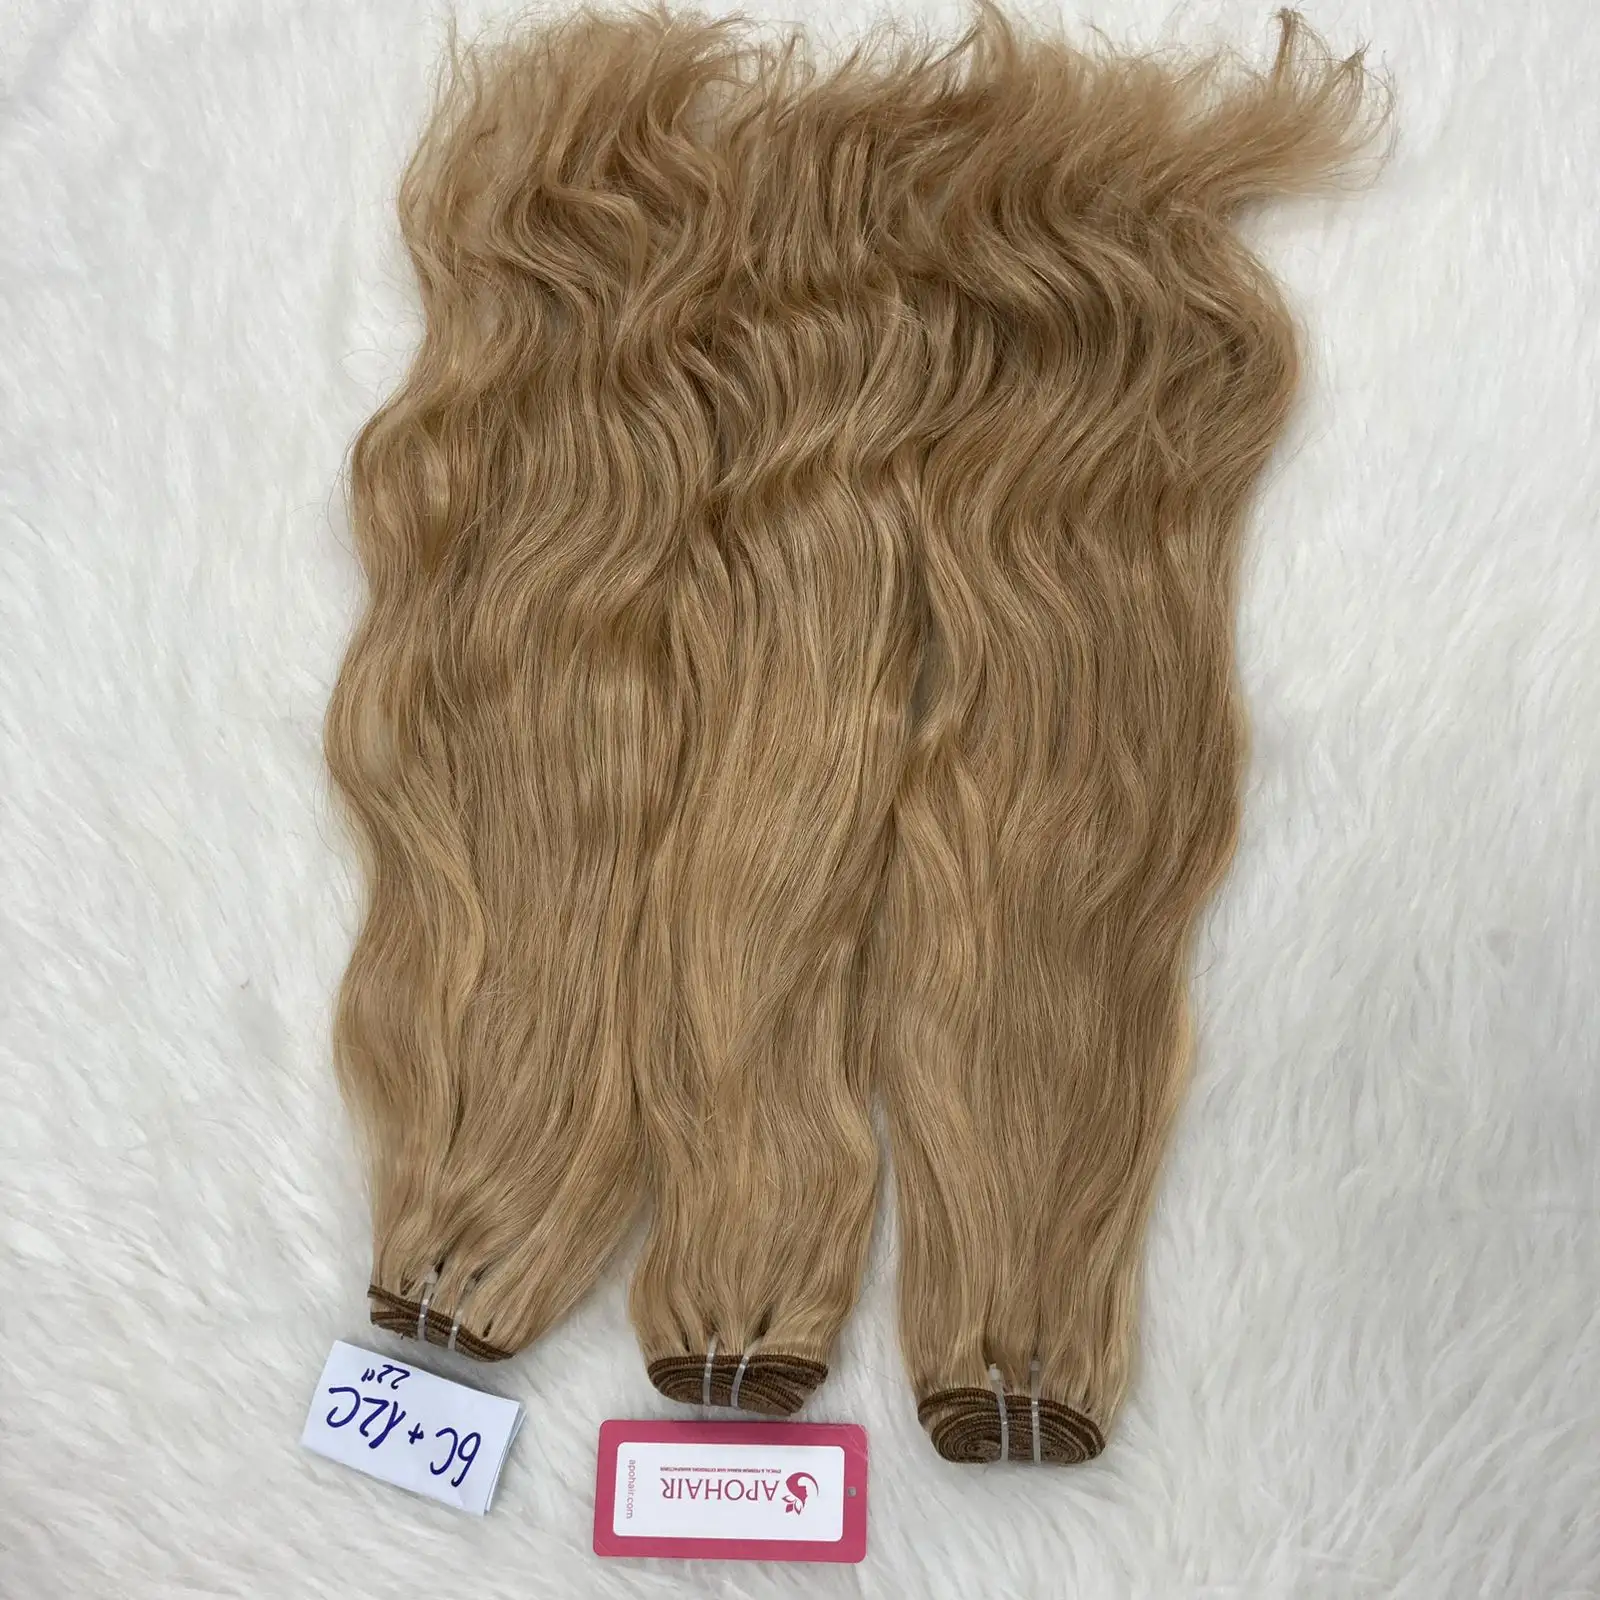 Preço por atacado vietnamita onda natural remy virgem ondulado cabelo extensões duplo desenhado cor cinza tom platina loira pacotes